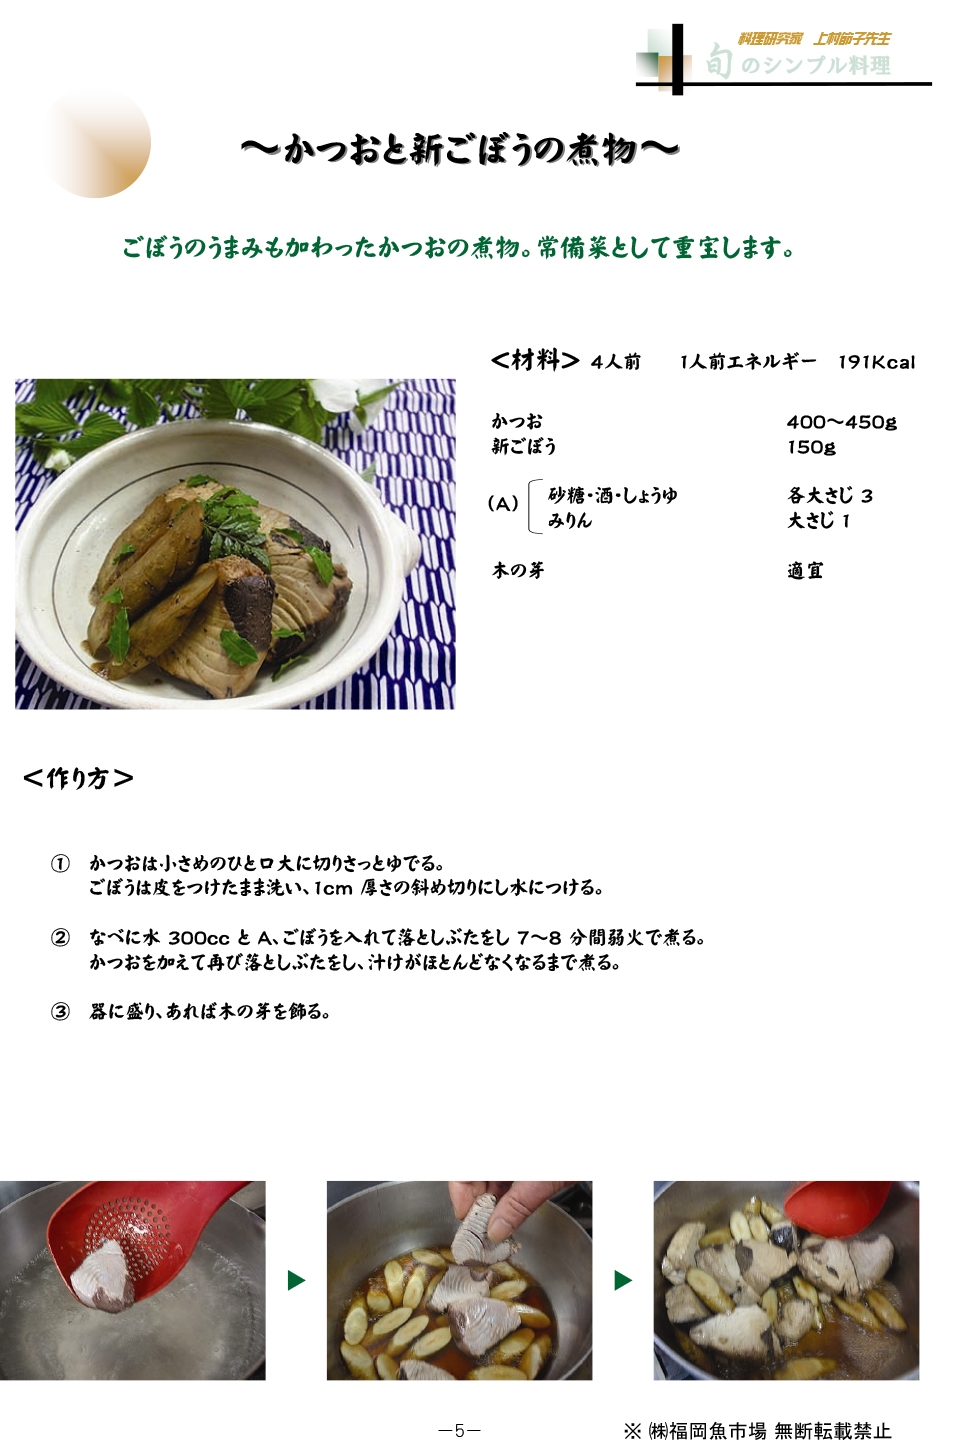 かつおと新ごぼうの煮物 旬のレシピ 福岡魚市場